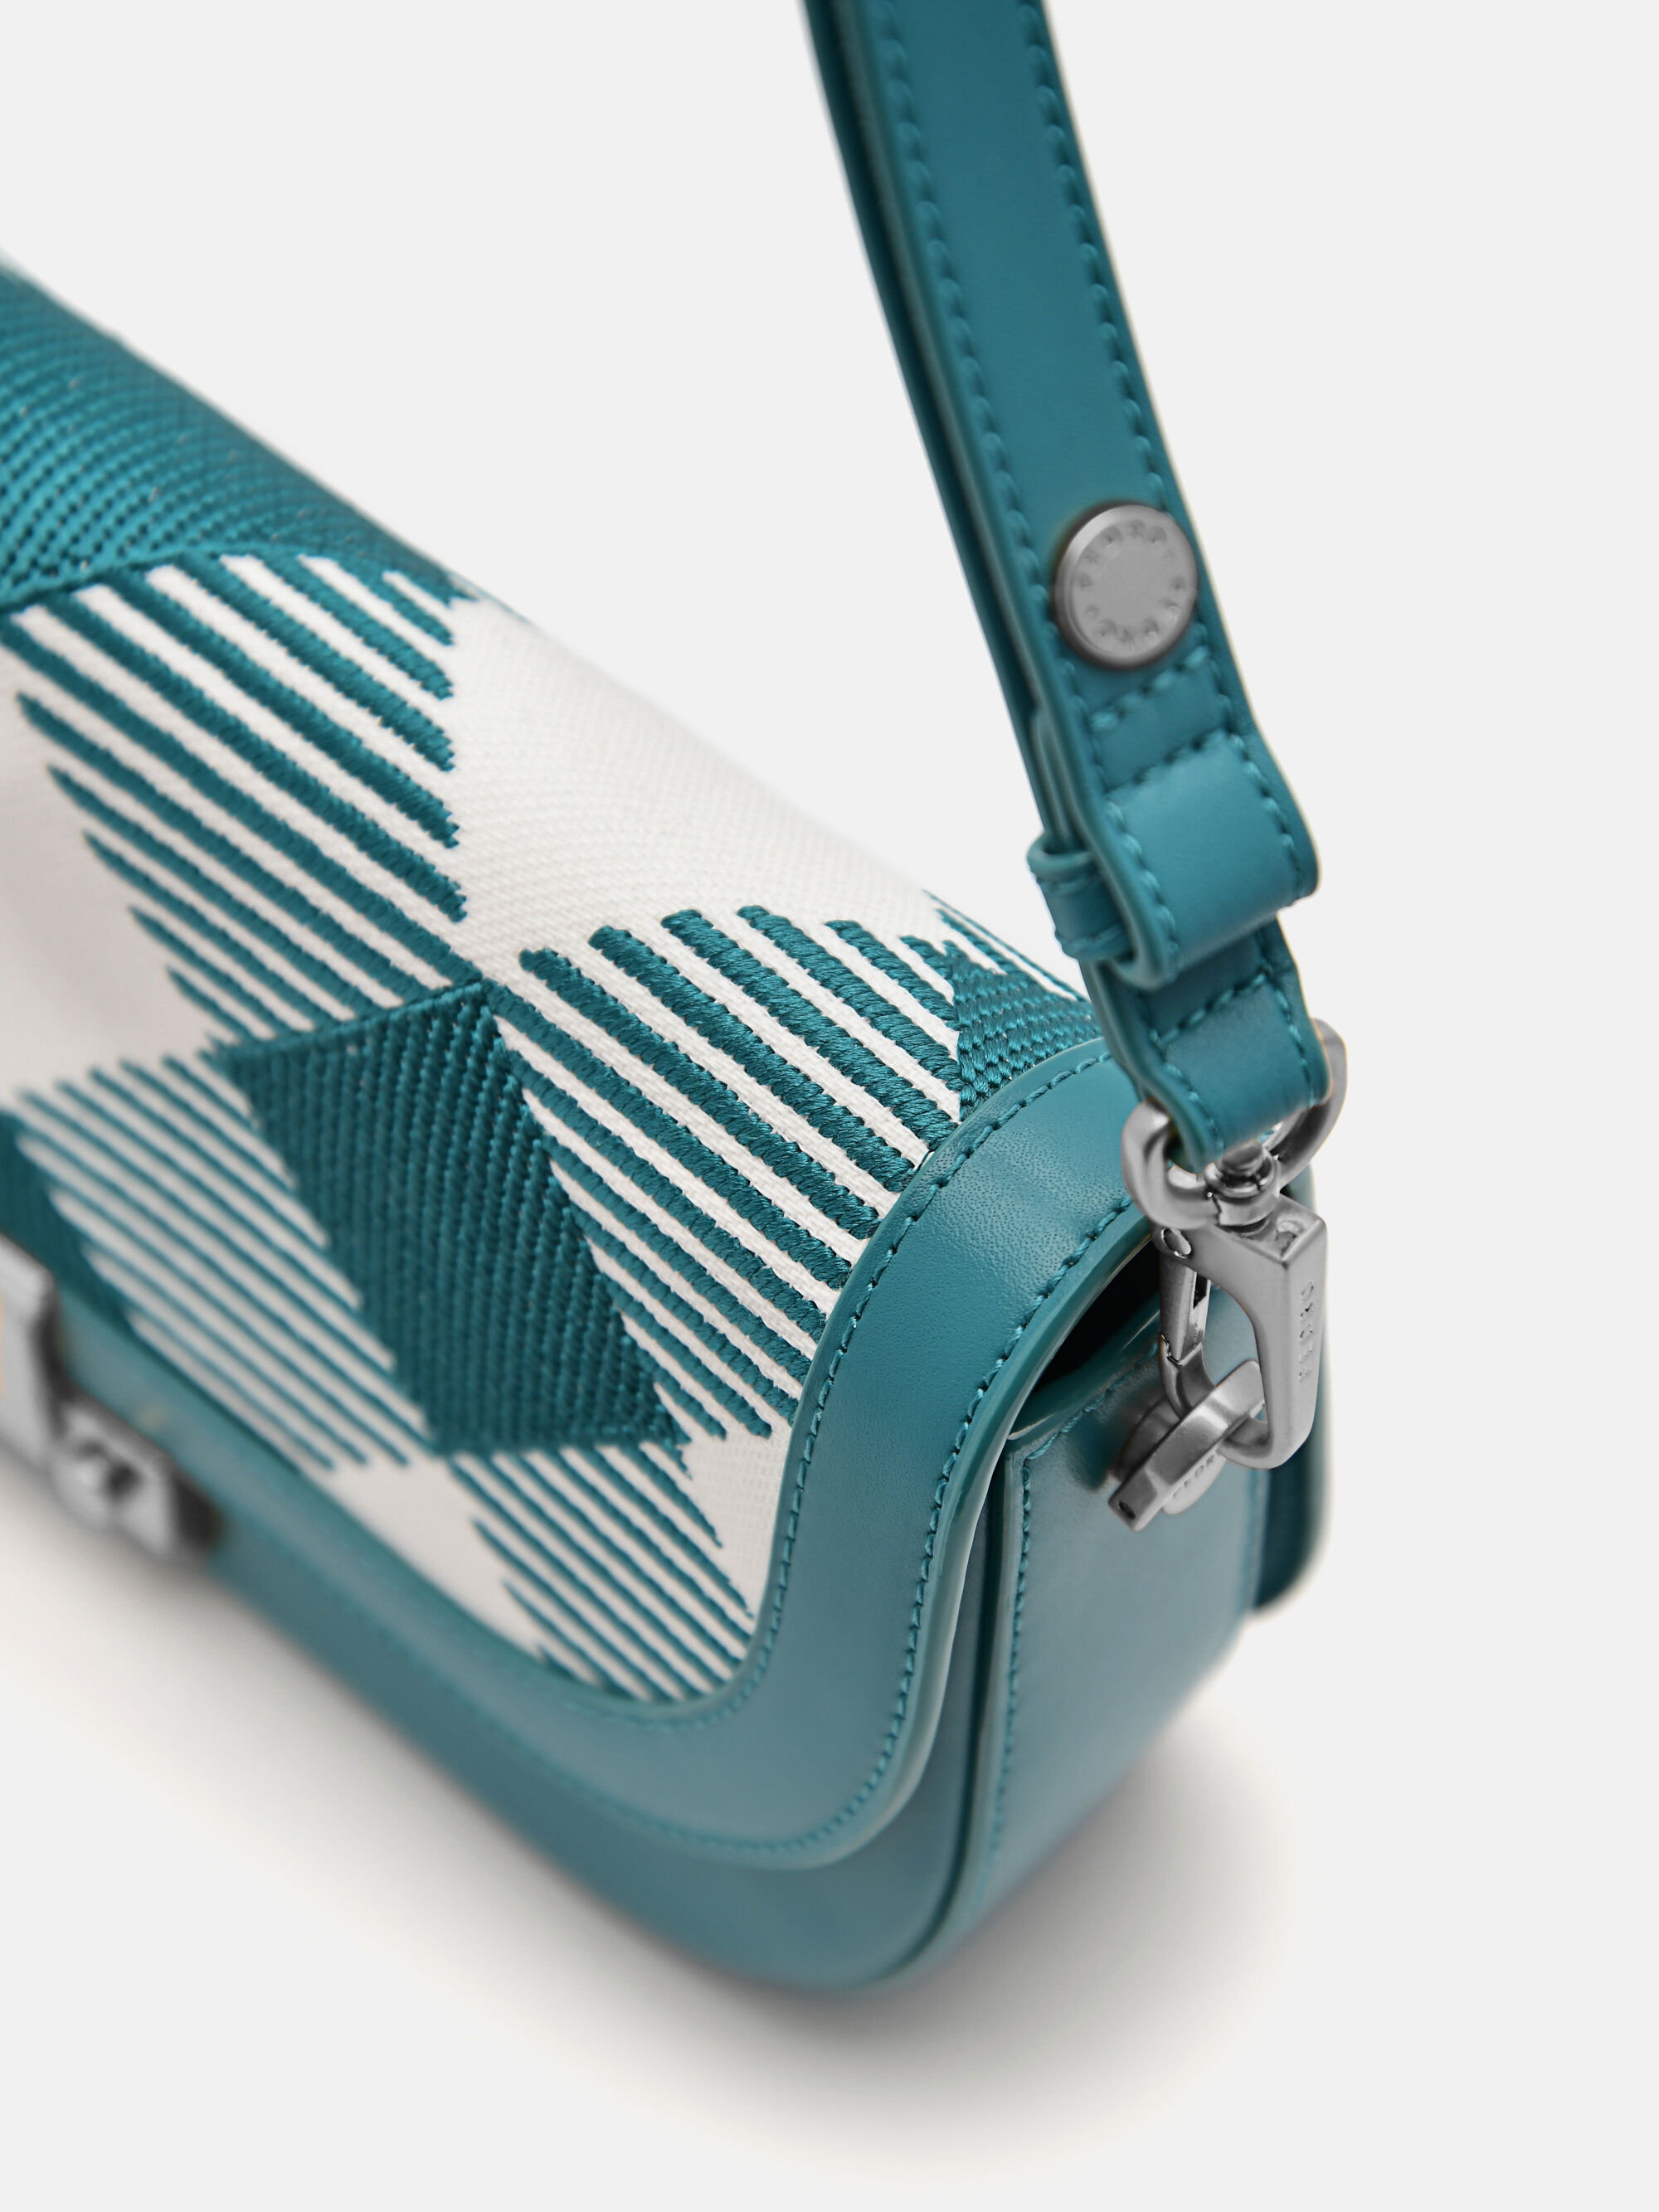 PEDRO Millie Shoulder Bag Size: W25.5 x H14 x D5.5 cm Colors